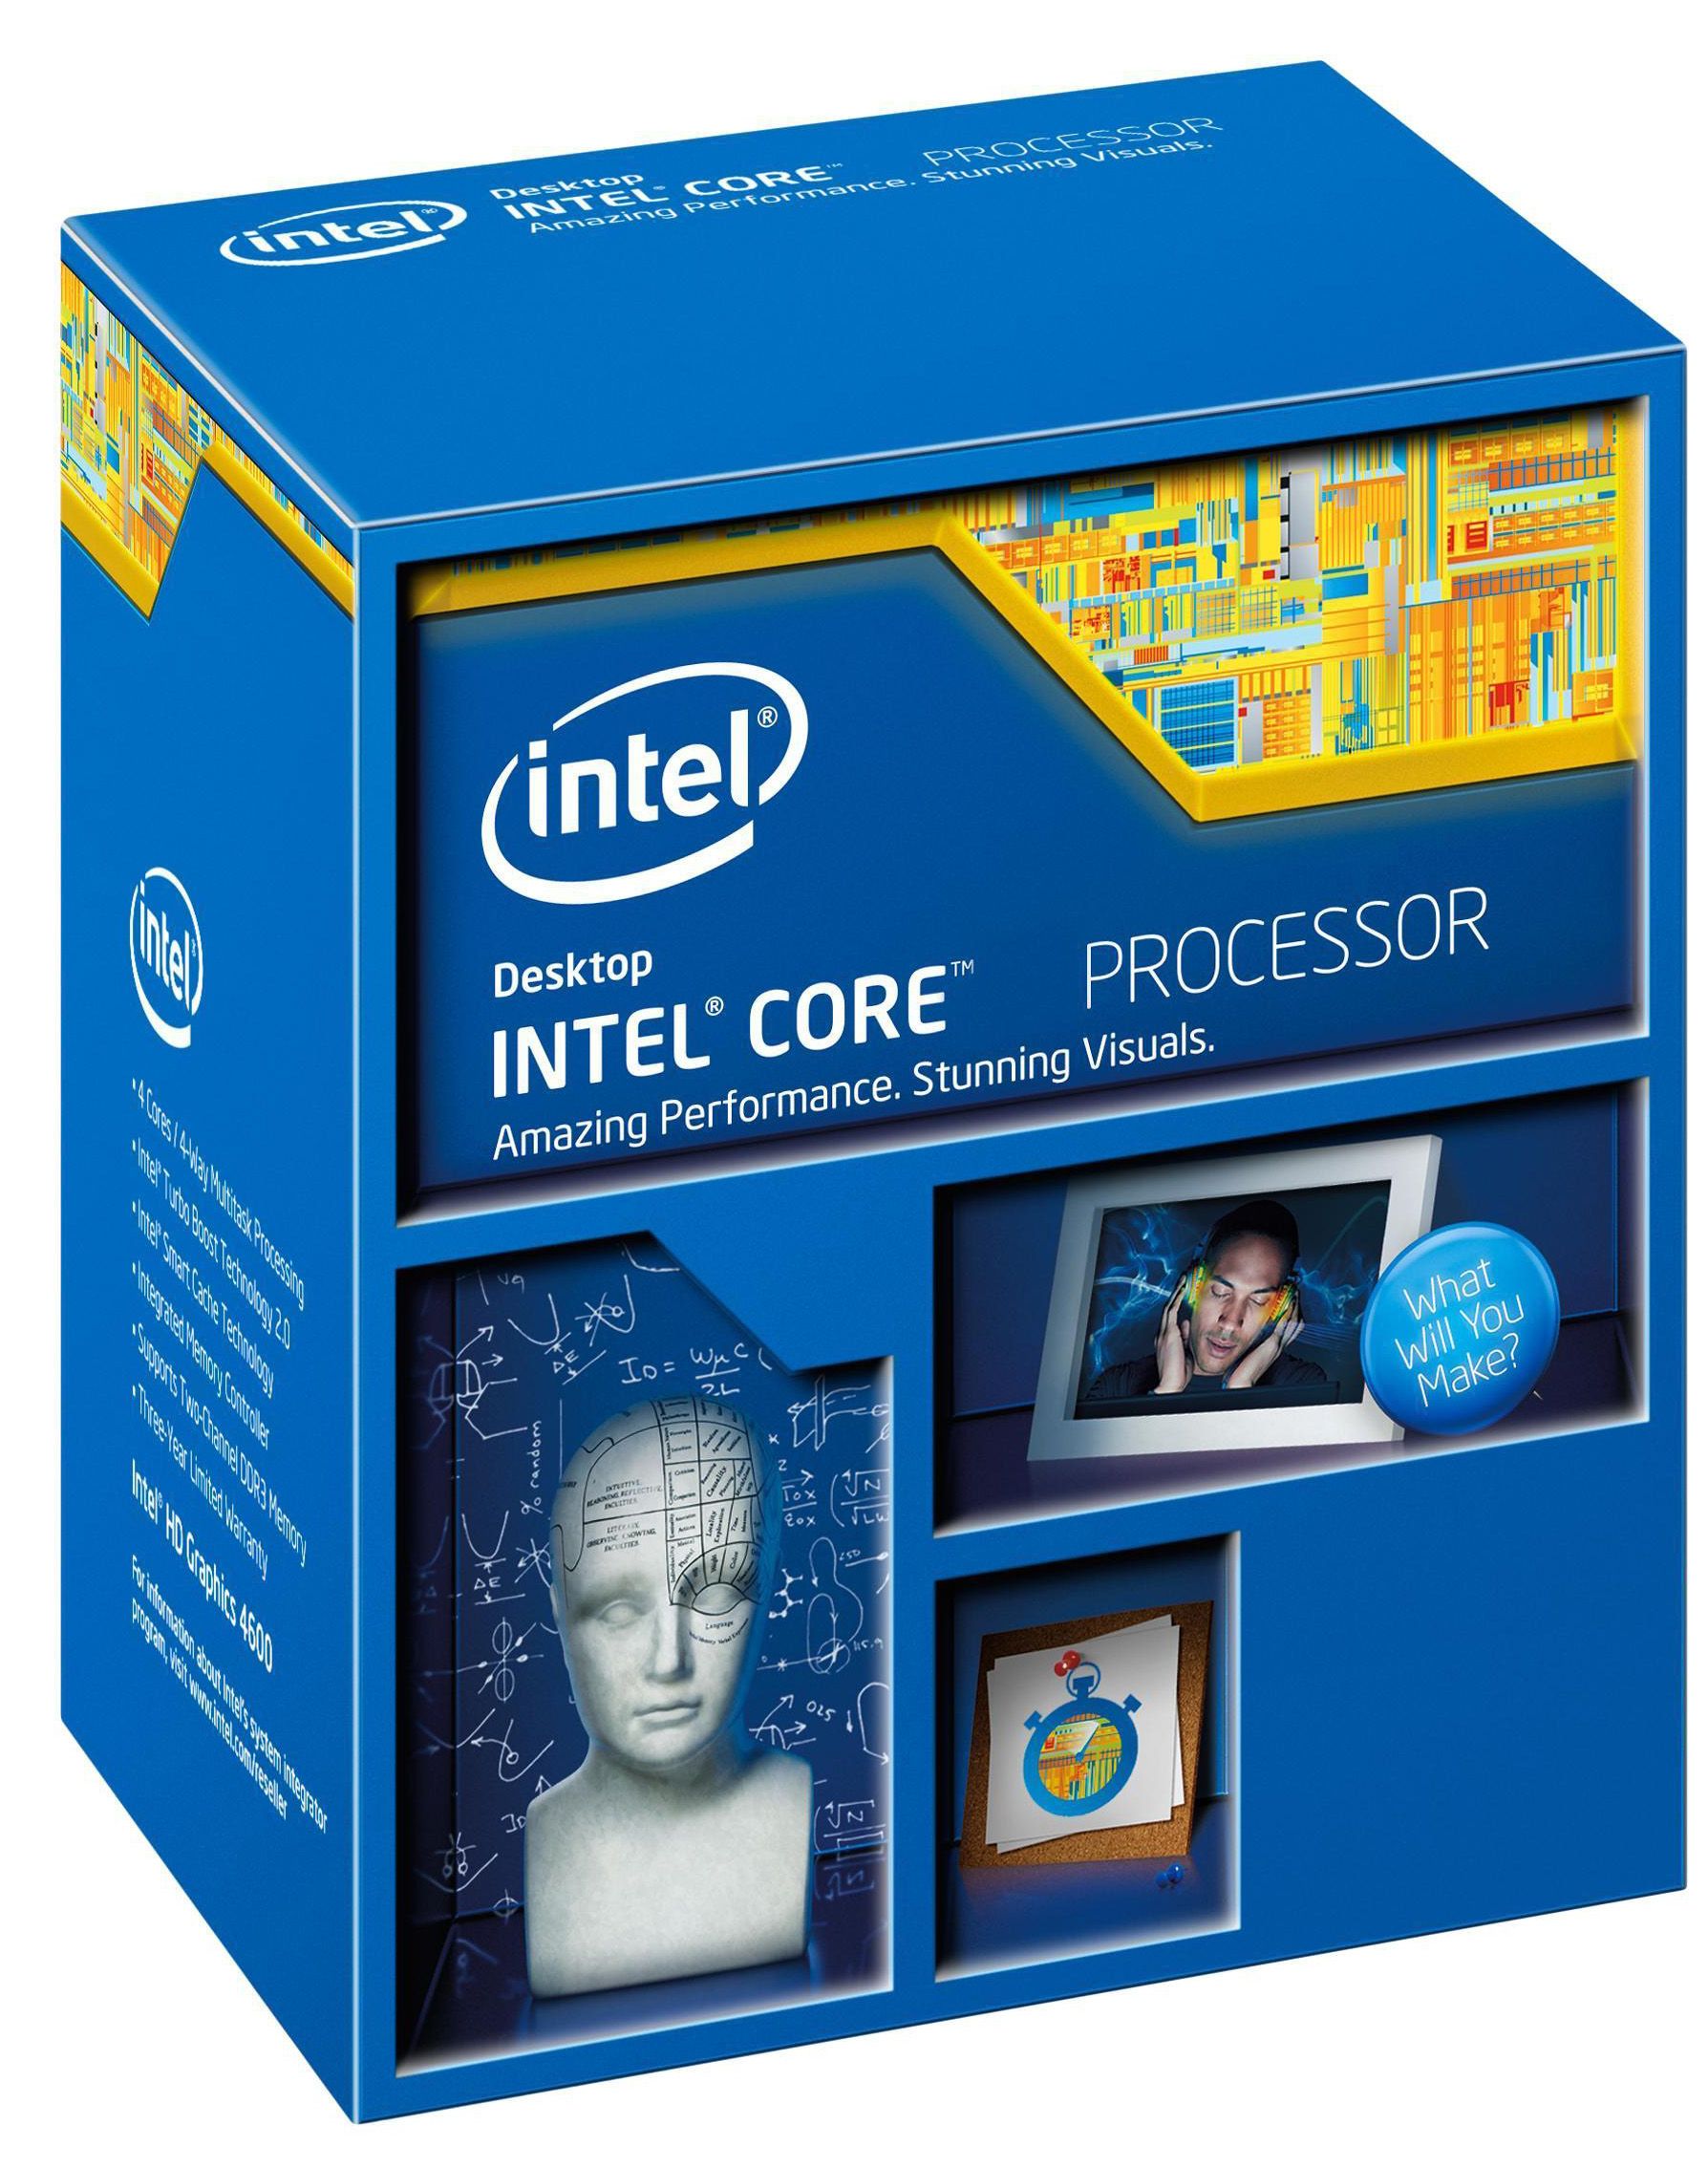 Купить интел i3. Intel Core i7-4790k Devil's Canyon lga1150, 4 x 4000 МГЦ. Intel Core i7-4770. Процессор: Intel i3-4130. Процессор Intel Core i5-4590 Haswell.